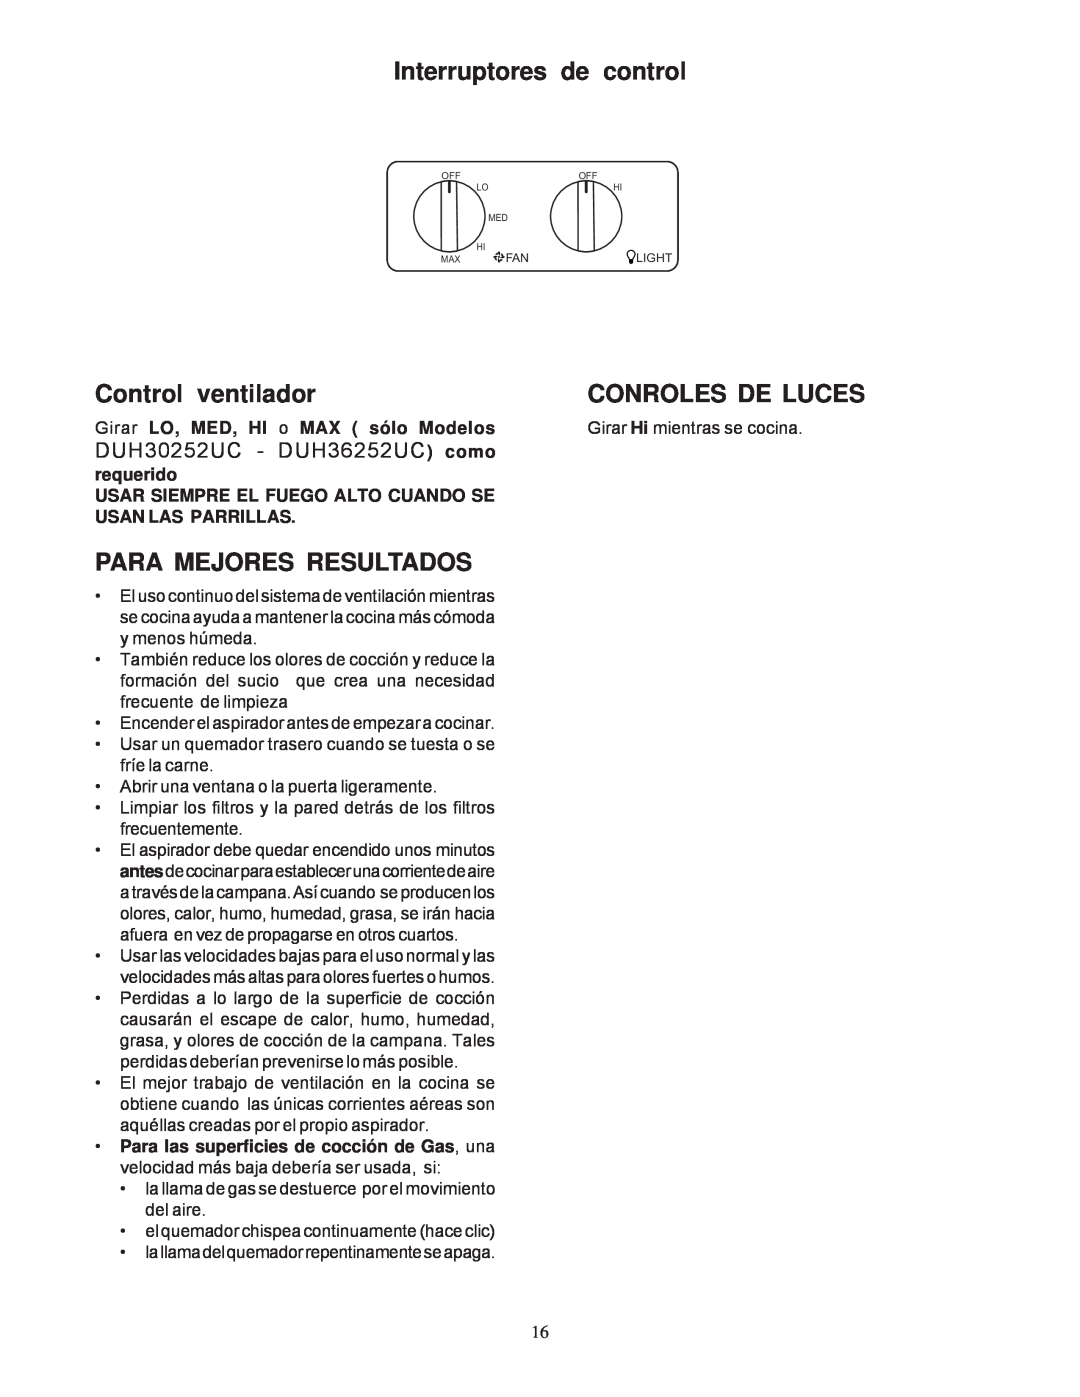 Bosch Appliances DUH30252UC manual Interruptores de control, Control ventilador, Conroles De Luces, Para Mejores Resultados 